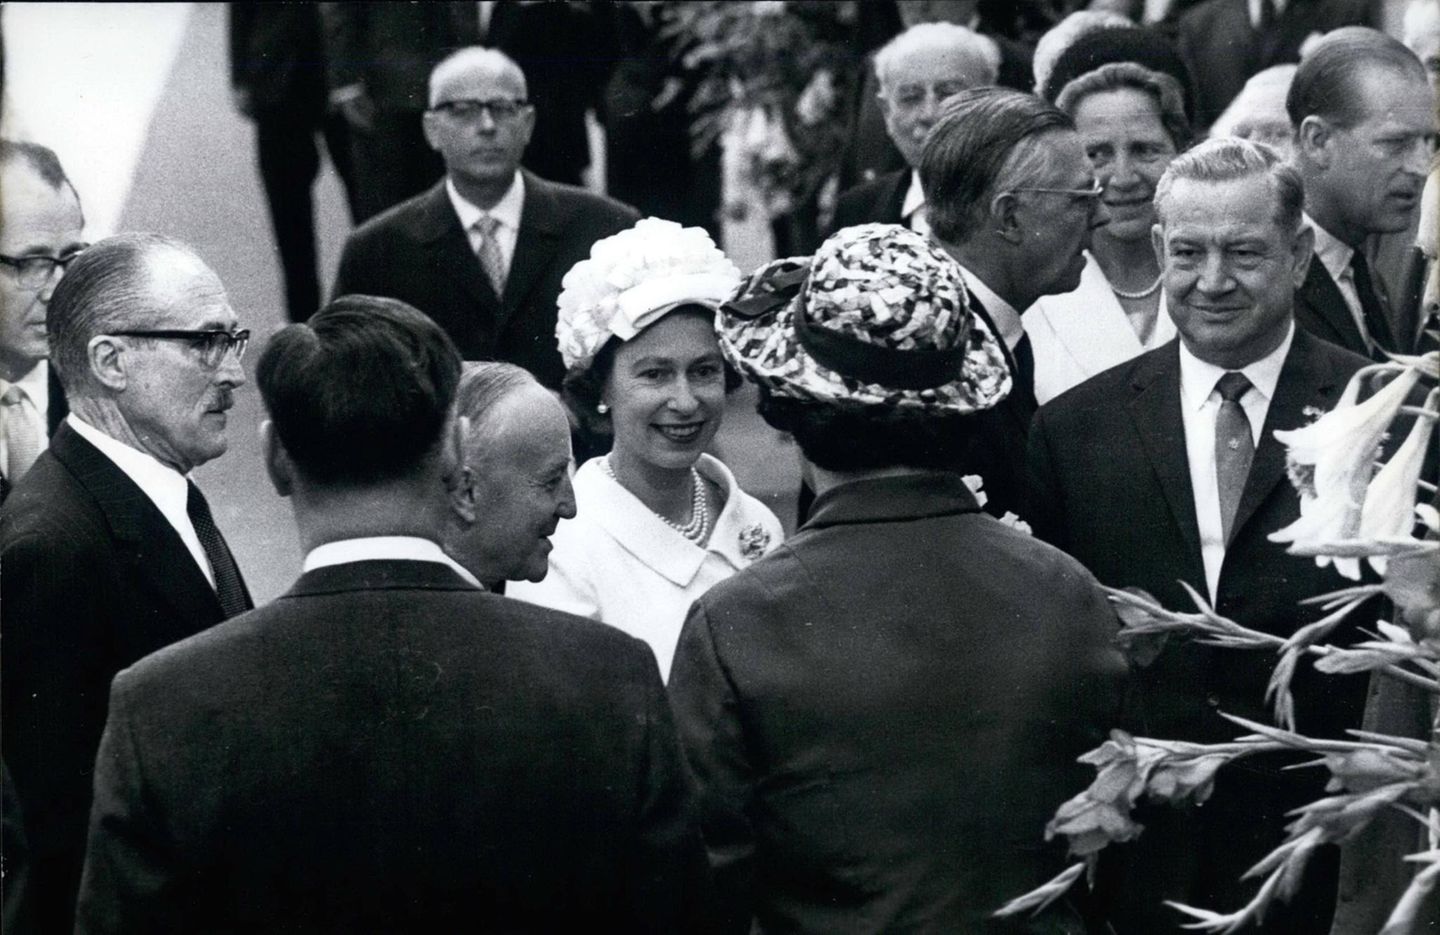 1965  1965 besucht die zum ersten Mal die Bundesrepublik, gemeinsam mit Prinz Philip startet sie ihren 10-tägigen Aufenthalt in München.